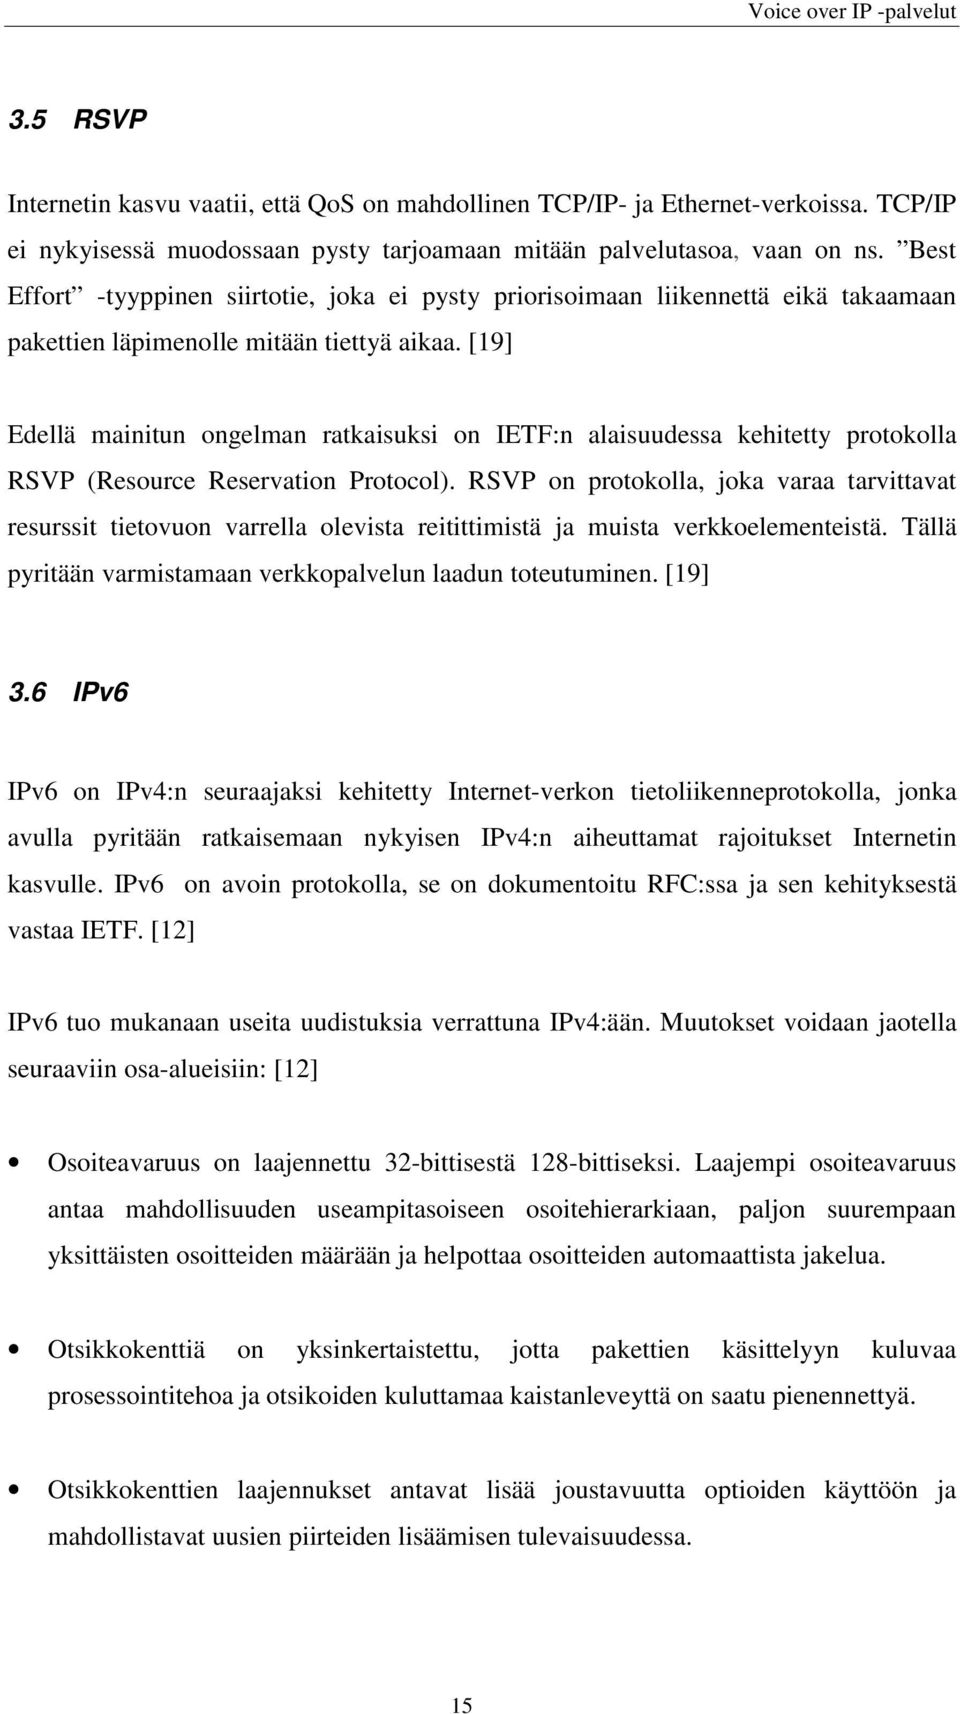 [19] Edellä mainitun ongelman ratkaisuksi on IETF:n alaisuudessa kehitetty protokolla RSVP (Resource Reservation Protocol).